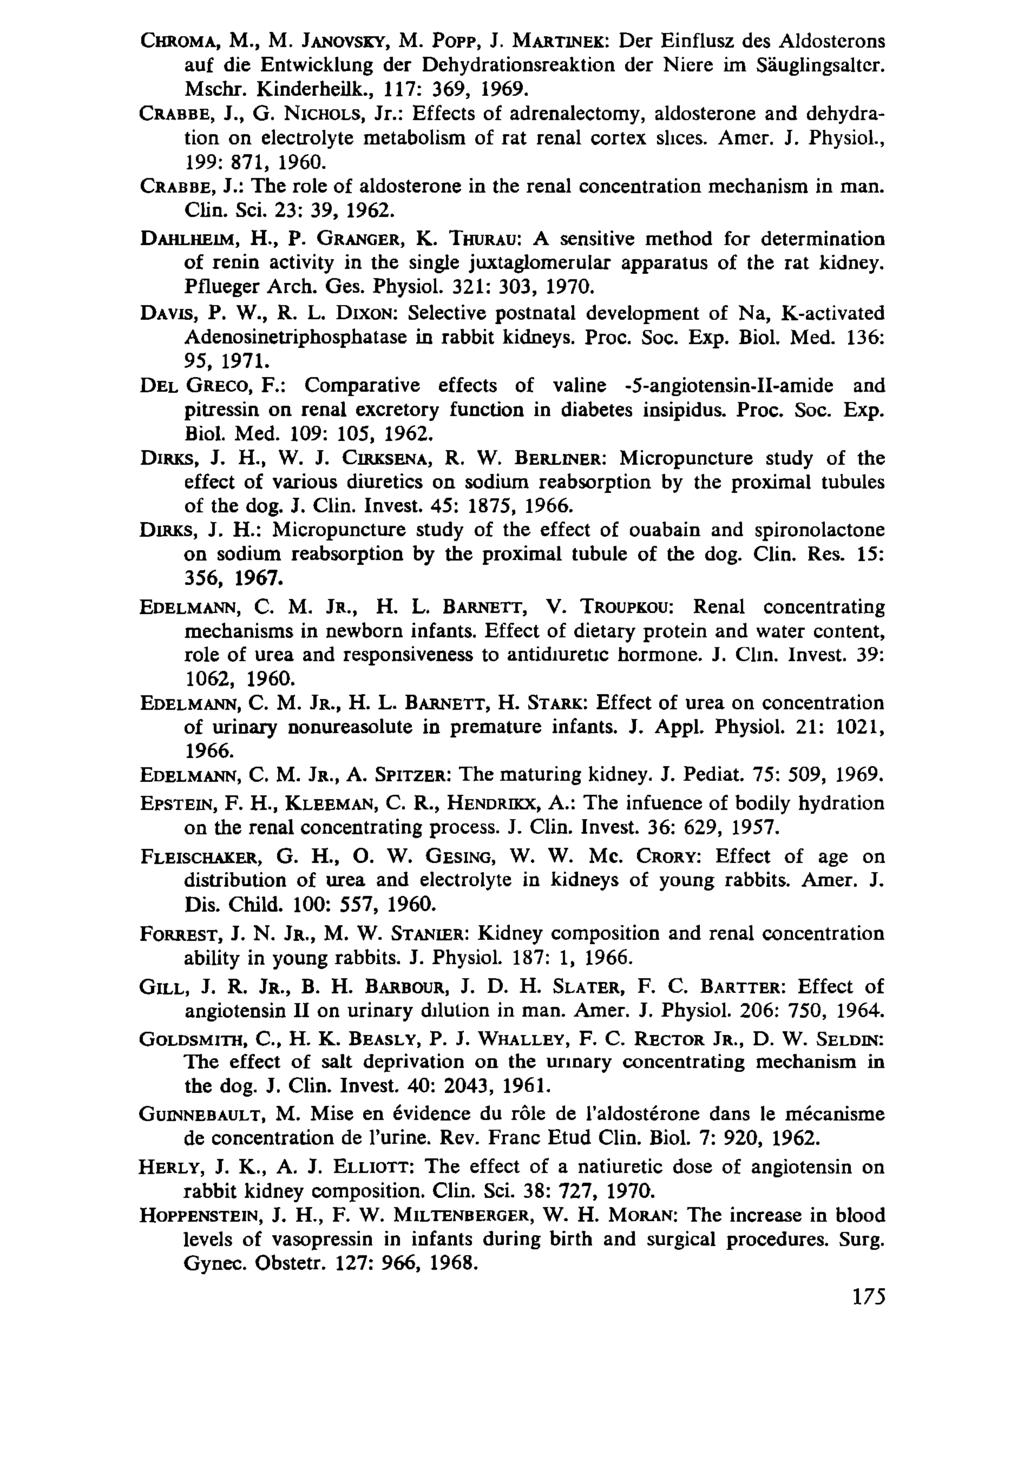 CHROMA, M., M. JANOVSKY, M. POPP, J. MARTINEK: Der Einflusz des Aldosterons auf die Entwicklung der Dehydrationsreaktion der Niere im Säuglingsaltcr. Mschr. Kinderheük., 117: 369, 1969. CRABBE, J., G.